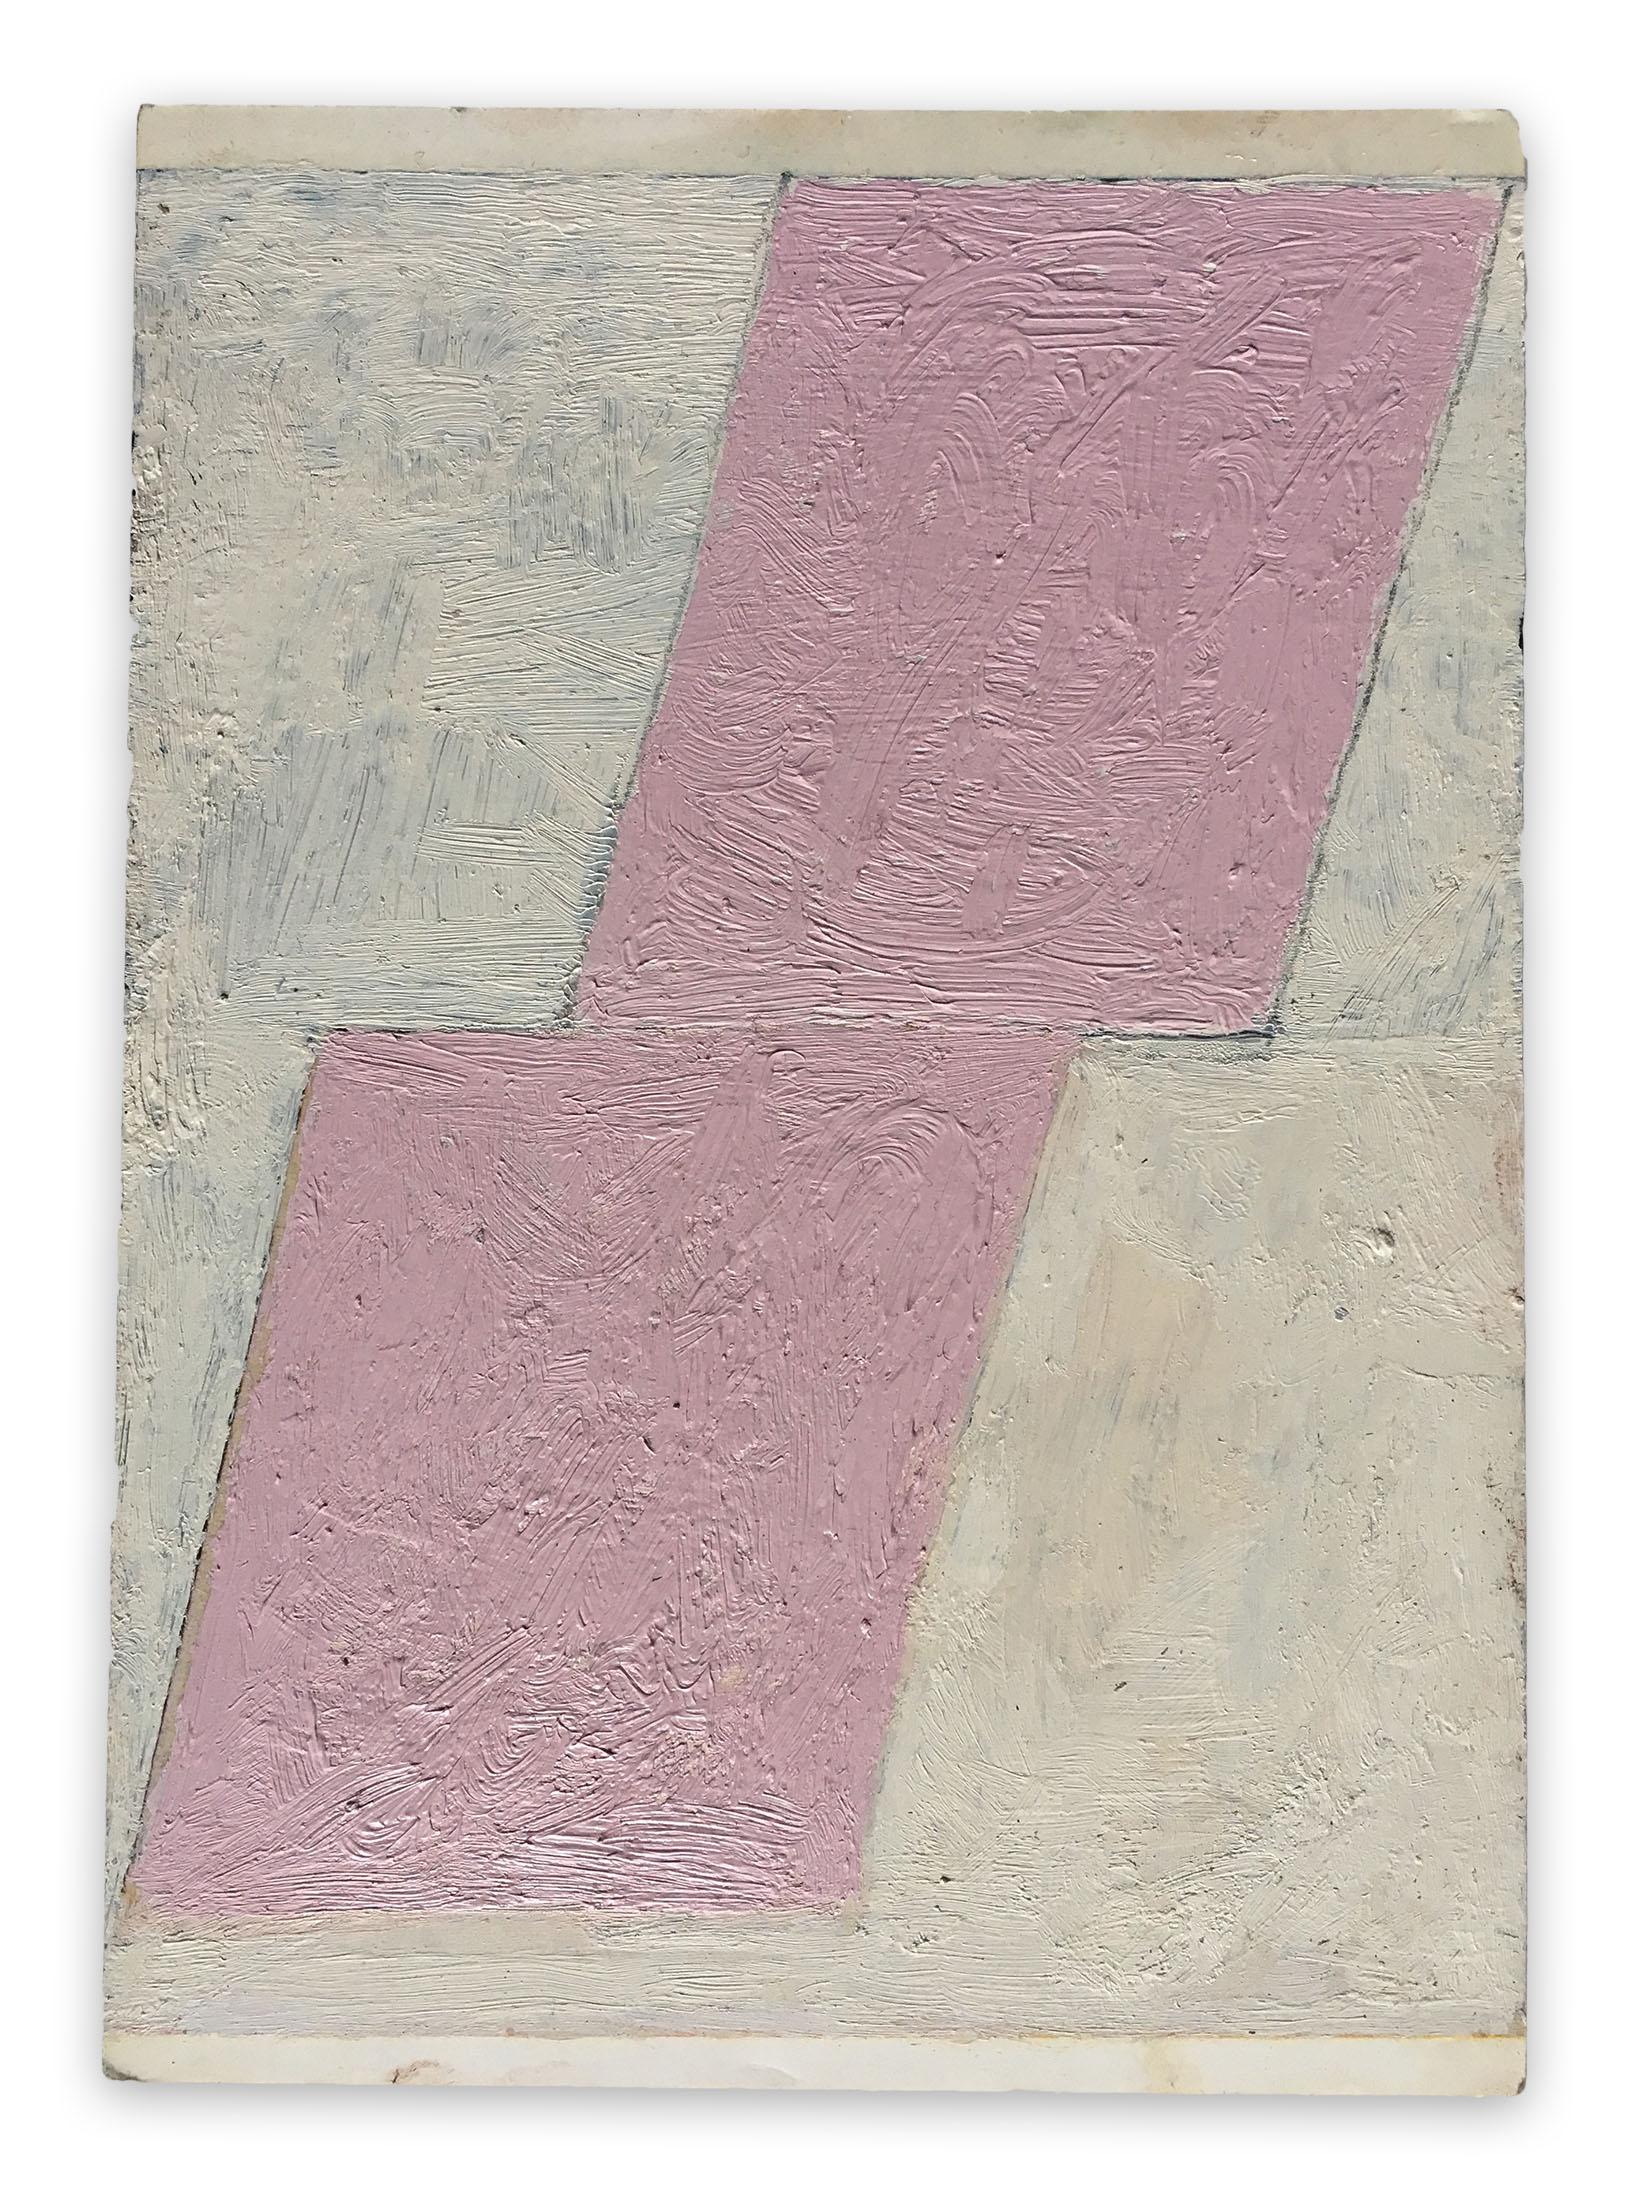 Fieroza Doorsen  Abstract Painting – Ohne Titel 2010 (Abstraktes Gemälde)